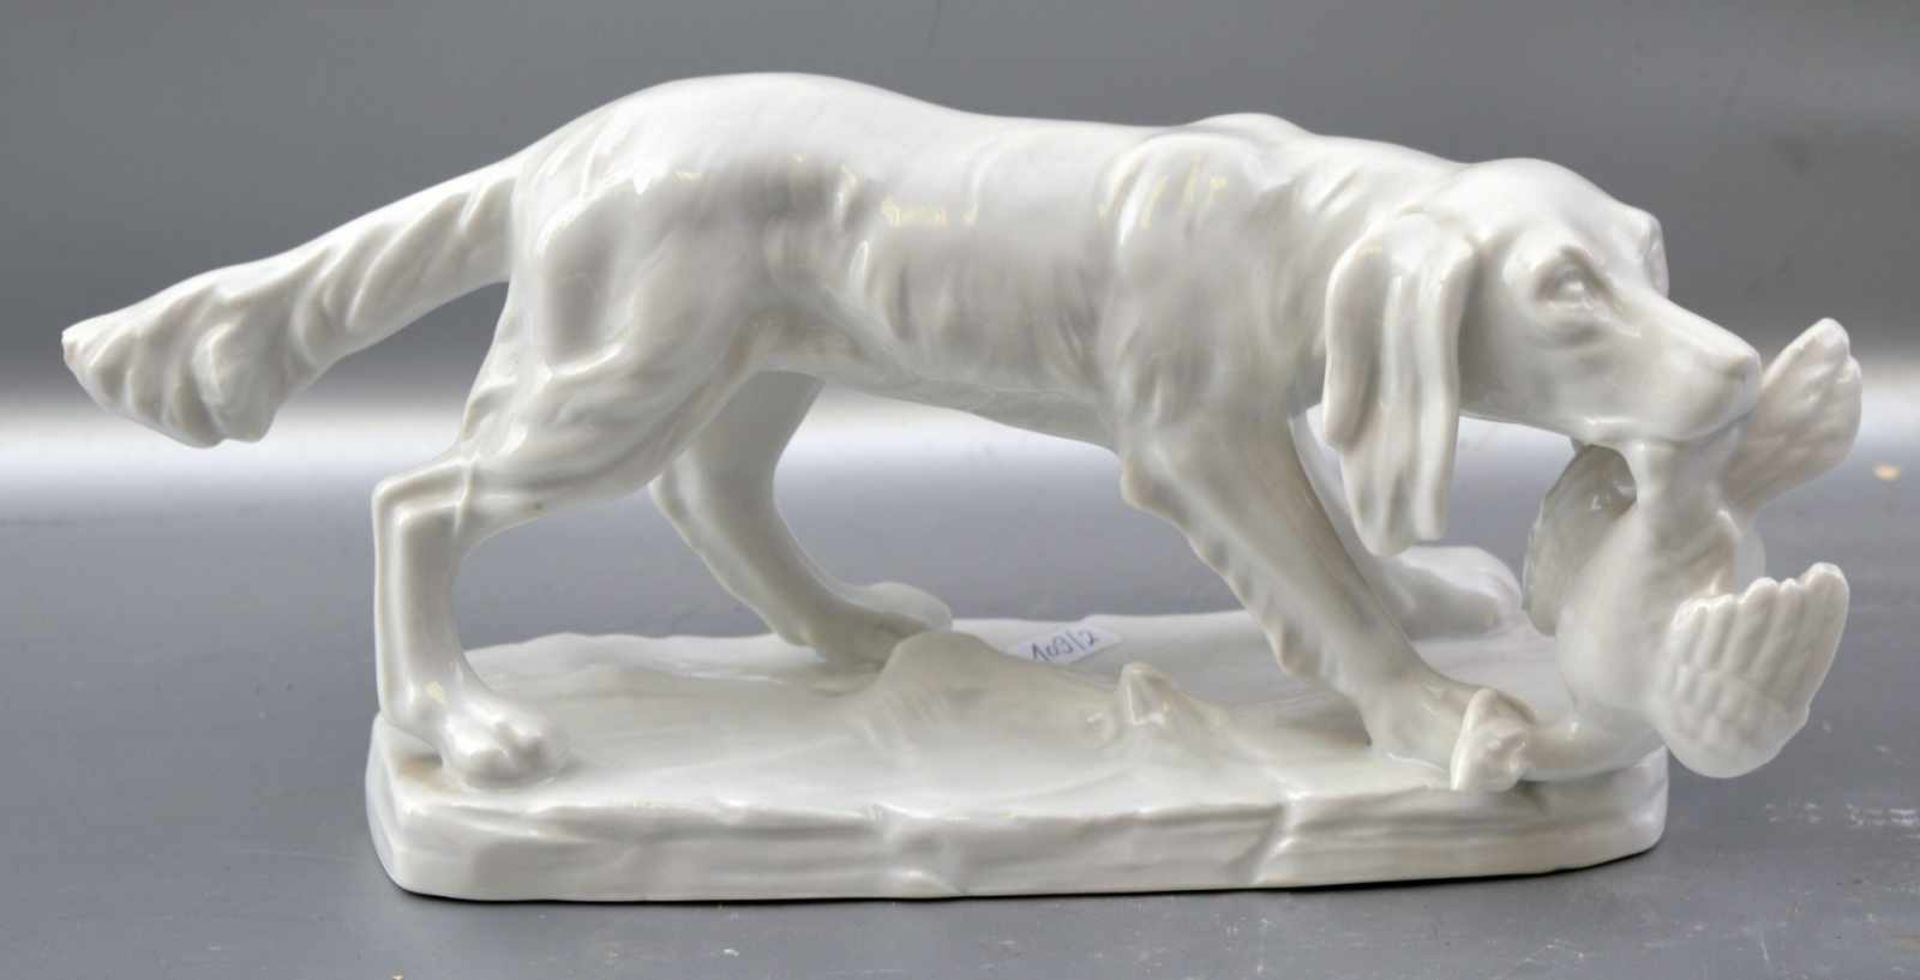 Jagdhund auf Sockel stehend, weiß glasiert, mit apportierter Ente, leicht best., H 10 cm, L 25 cm,